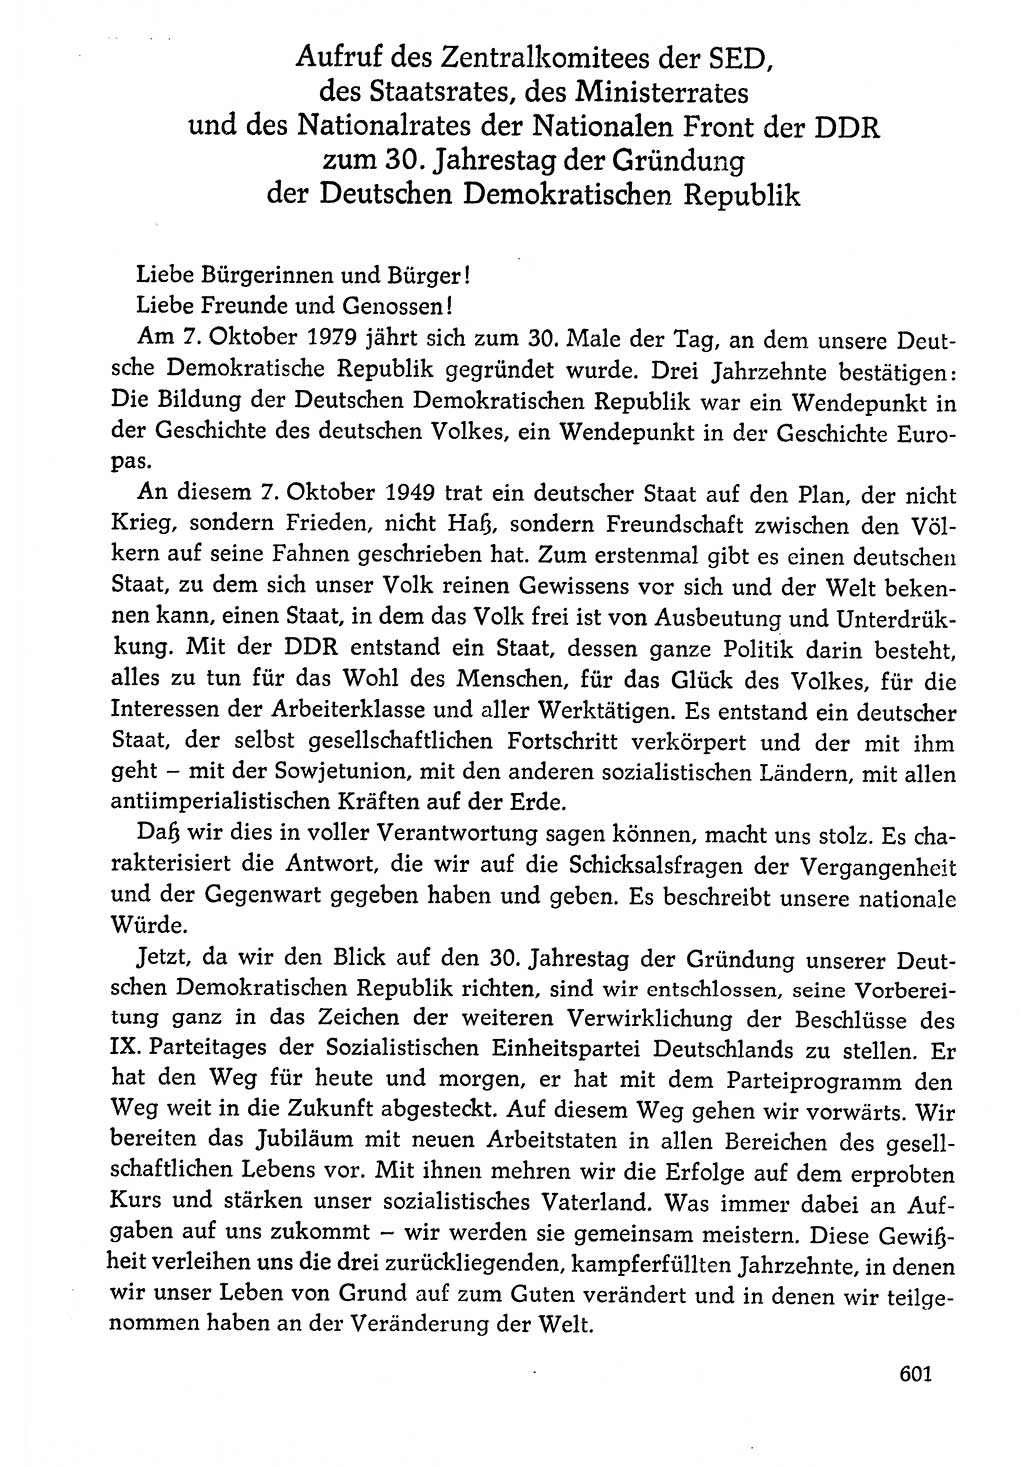 Dokumente der Sozialistischen Einheitspartei Deutschlands (SED) [Deutsche Demokratische Republik (DDR)] 1976-1977, Seite 601 (Dok. SED DDR 1976-1977, S. 601)